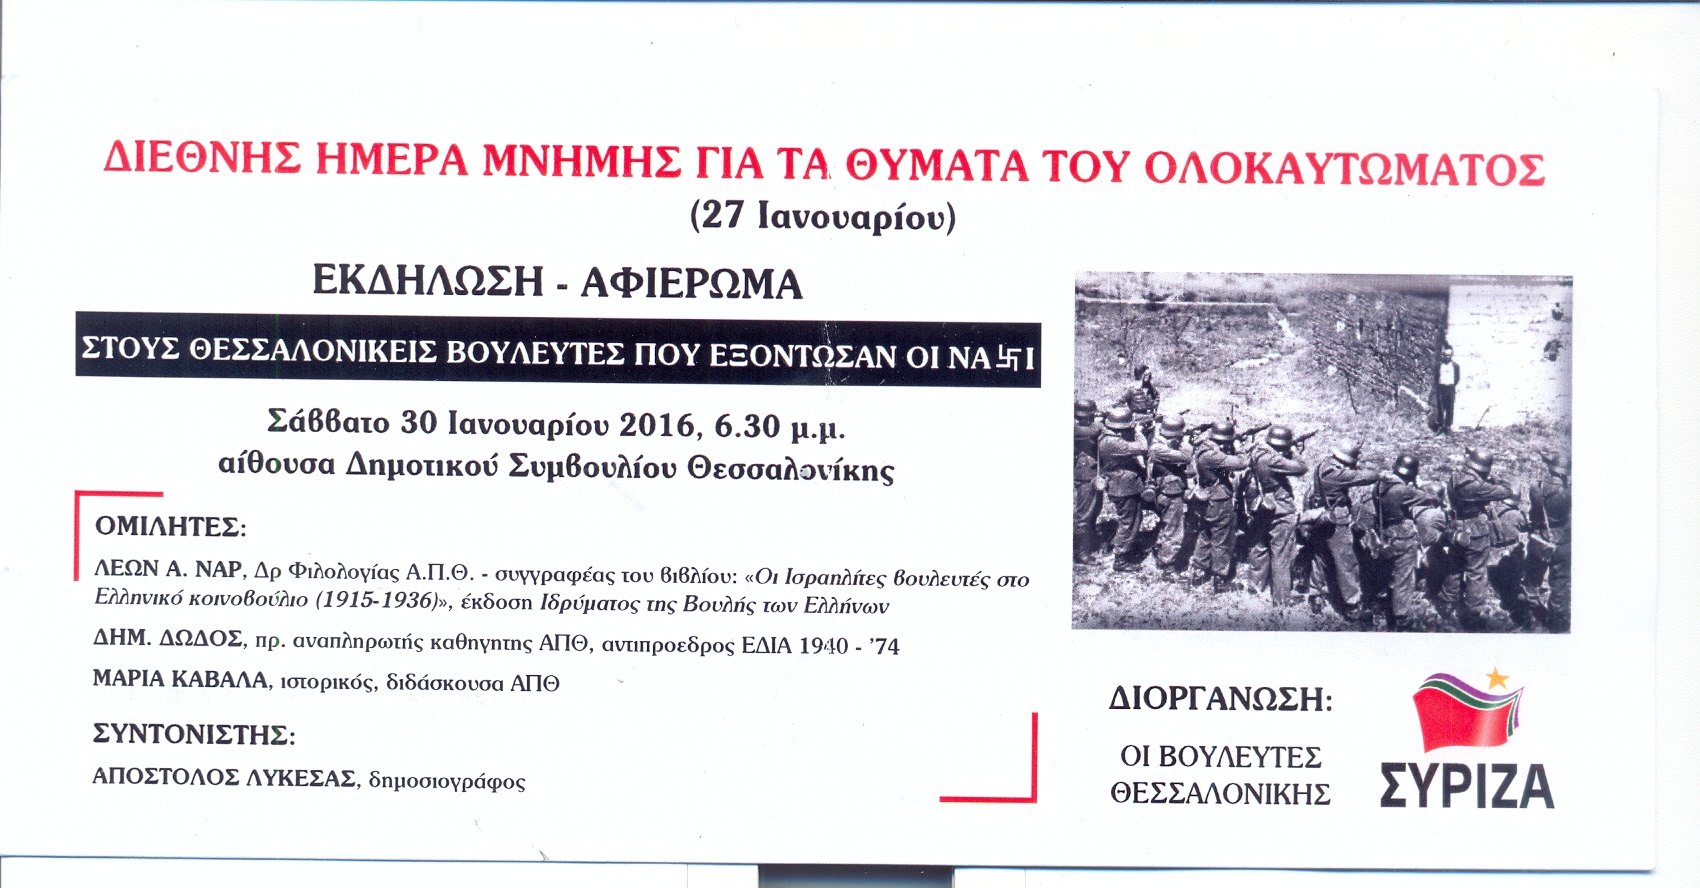 Εκδήλωση για τους Θεσσαλονικείς Βουλευτές που εξοντώθηκαν από τους Ναζί